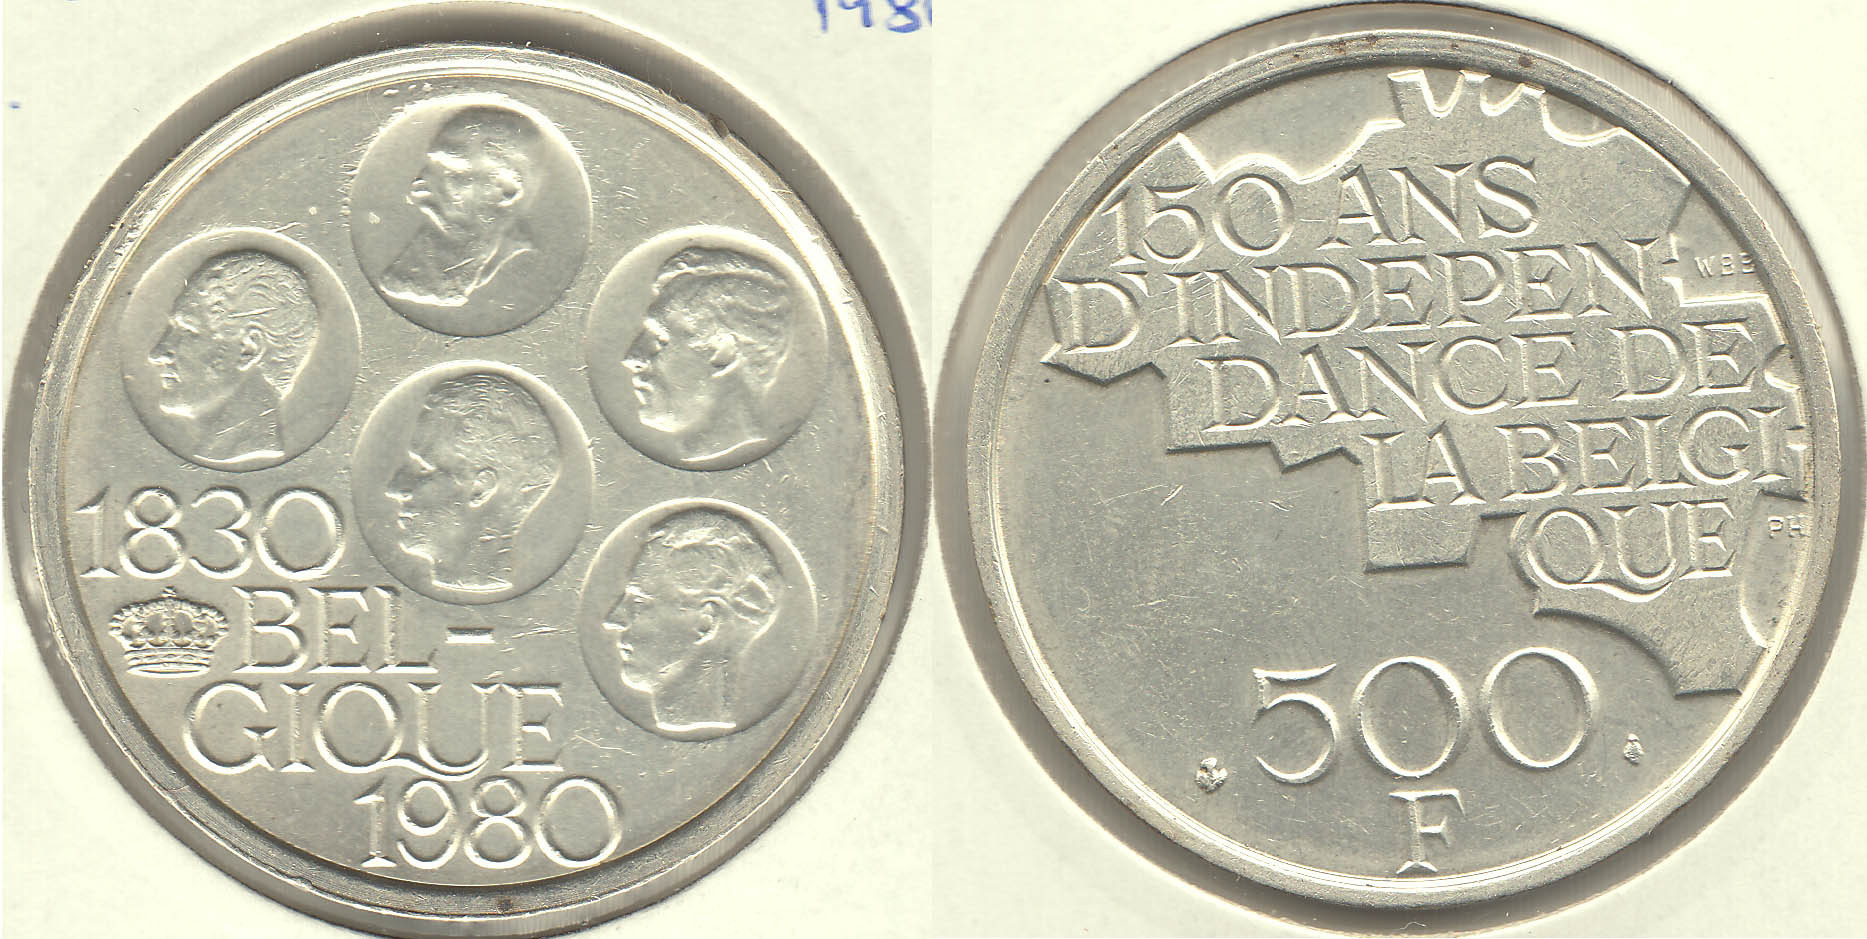 BELGICA - BELGIUM. 500 FRANCOS (FRANCS) DE 1980. PLATA 0.510.